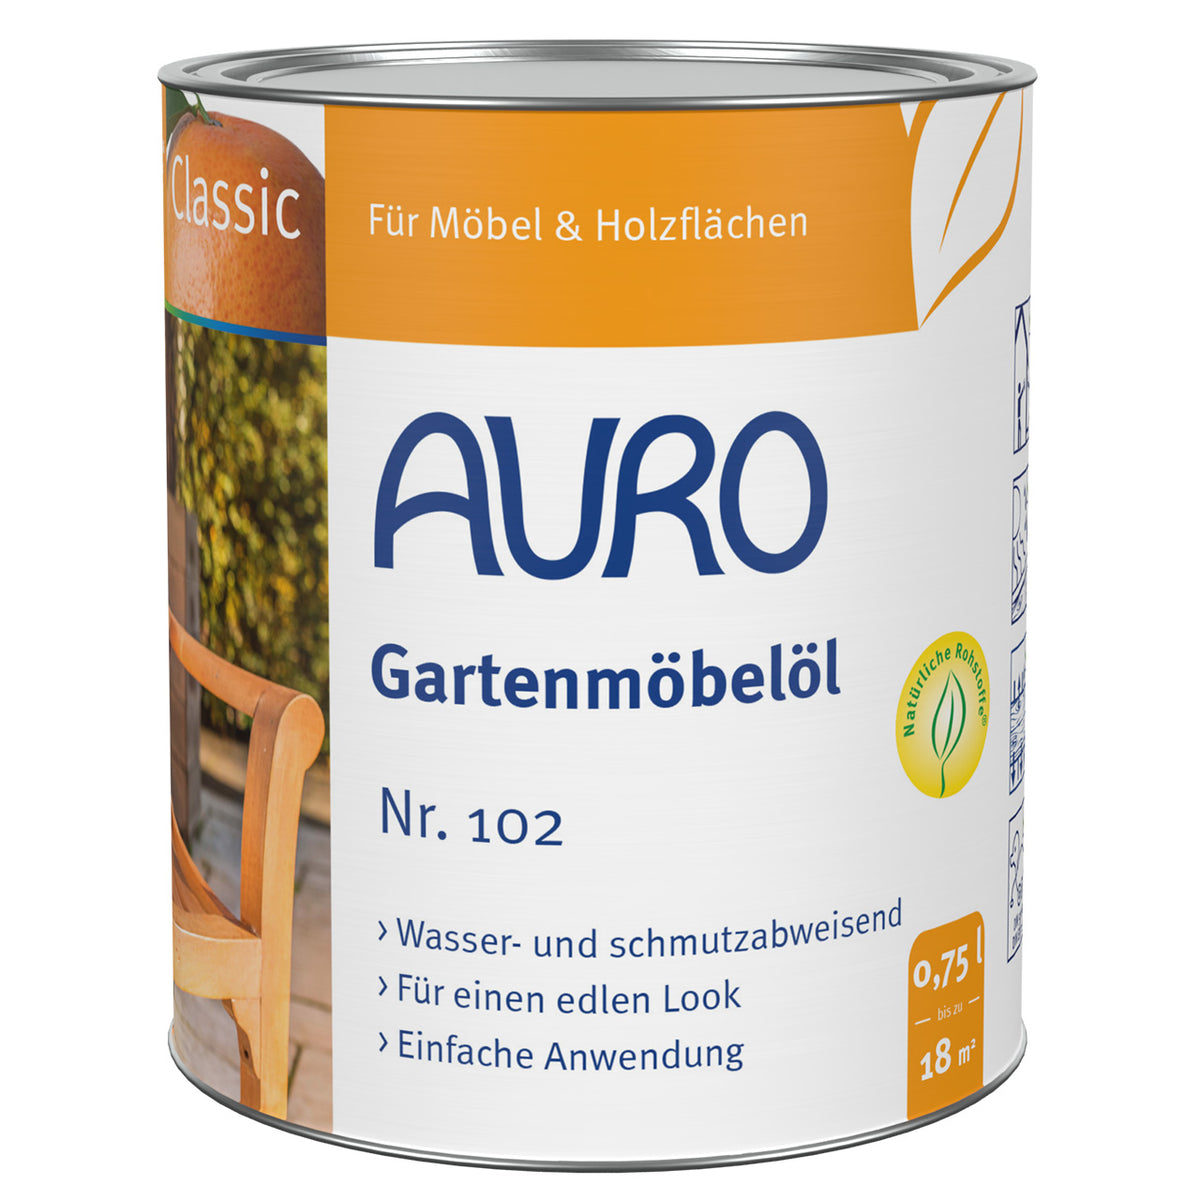 AURO Gartenmöbelöl Classic Nr. 102 _ Teaköl